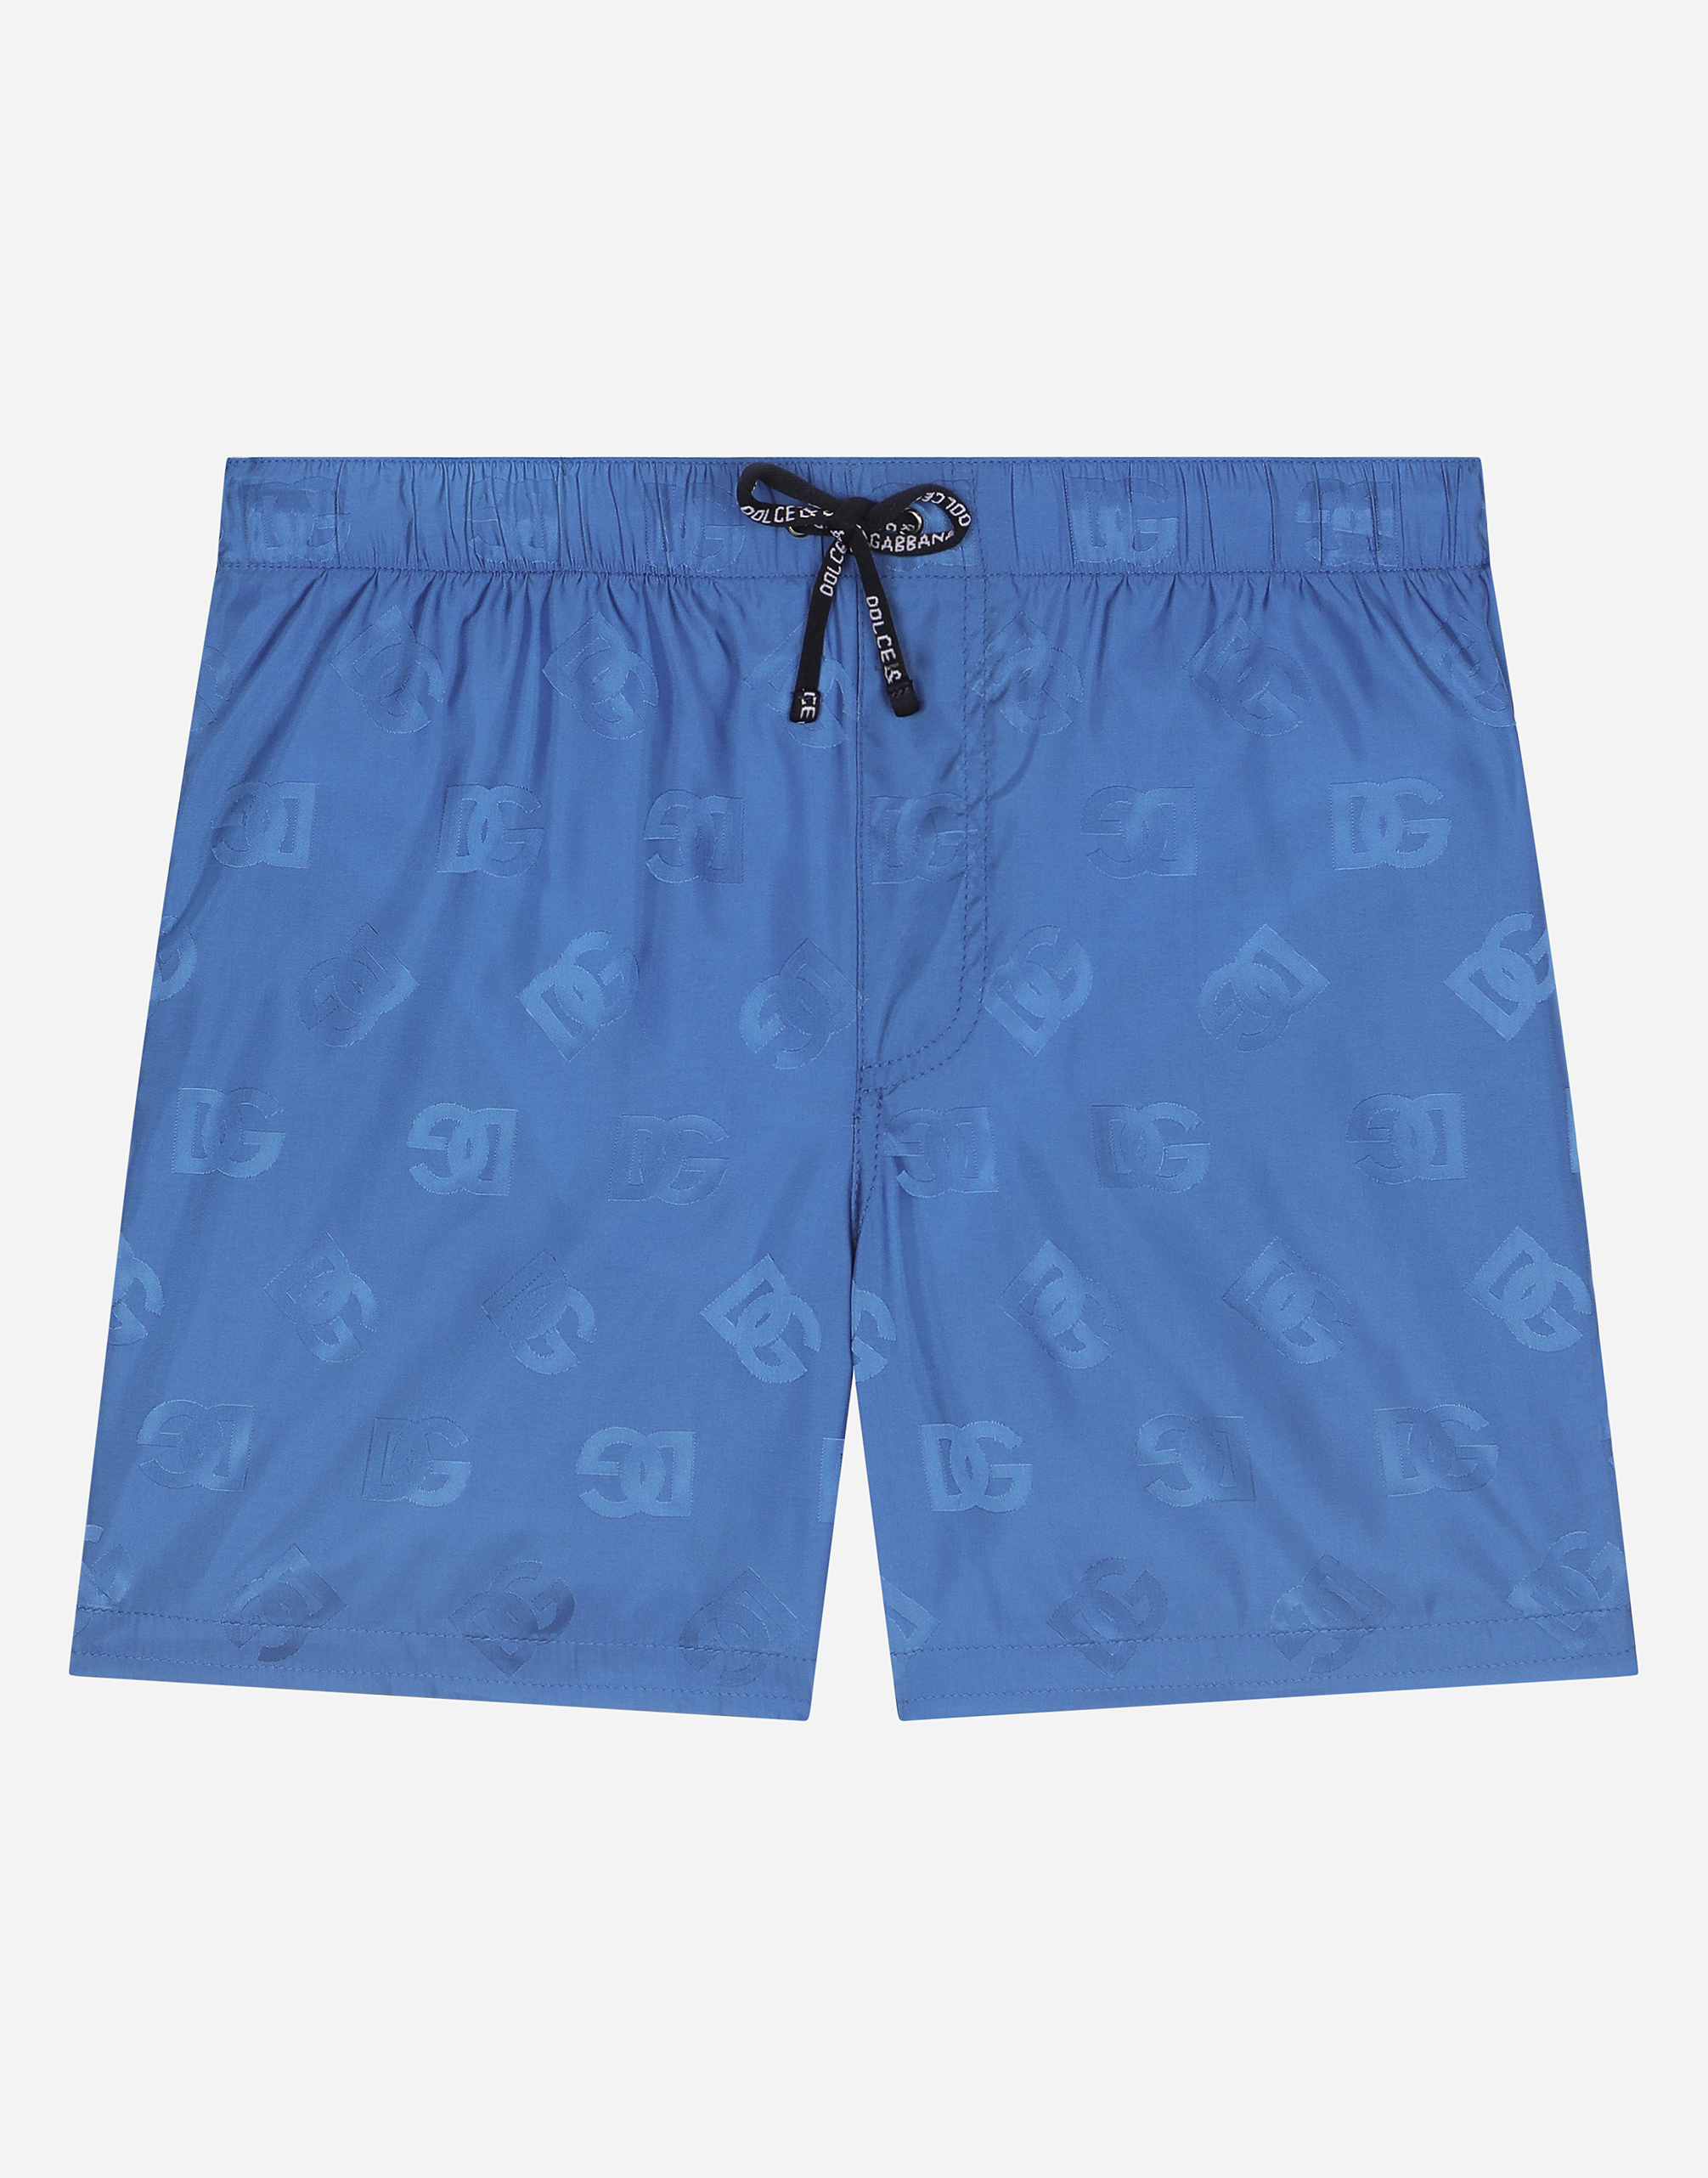 Nylon swim trunks with jacquard DG logo in Multicolor